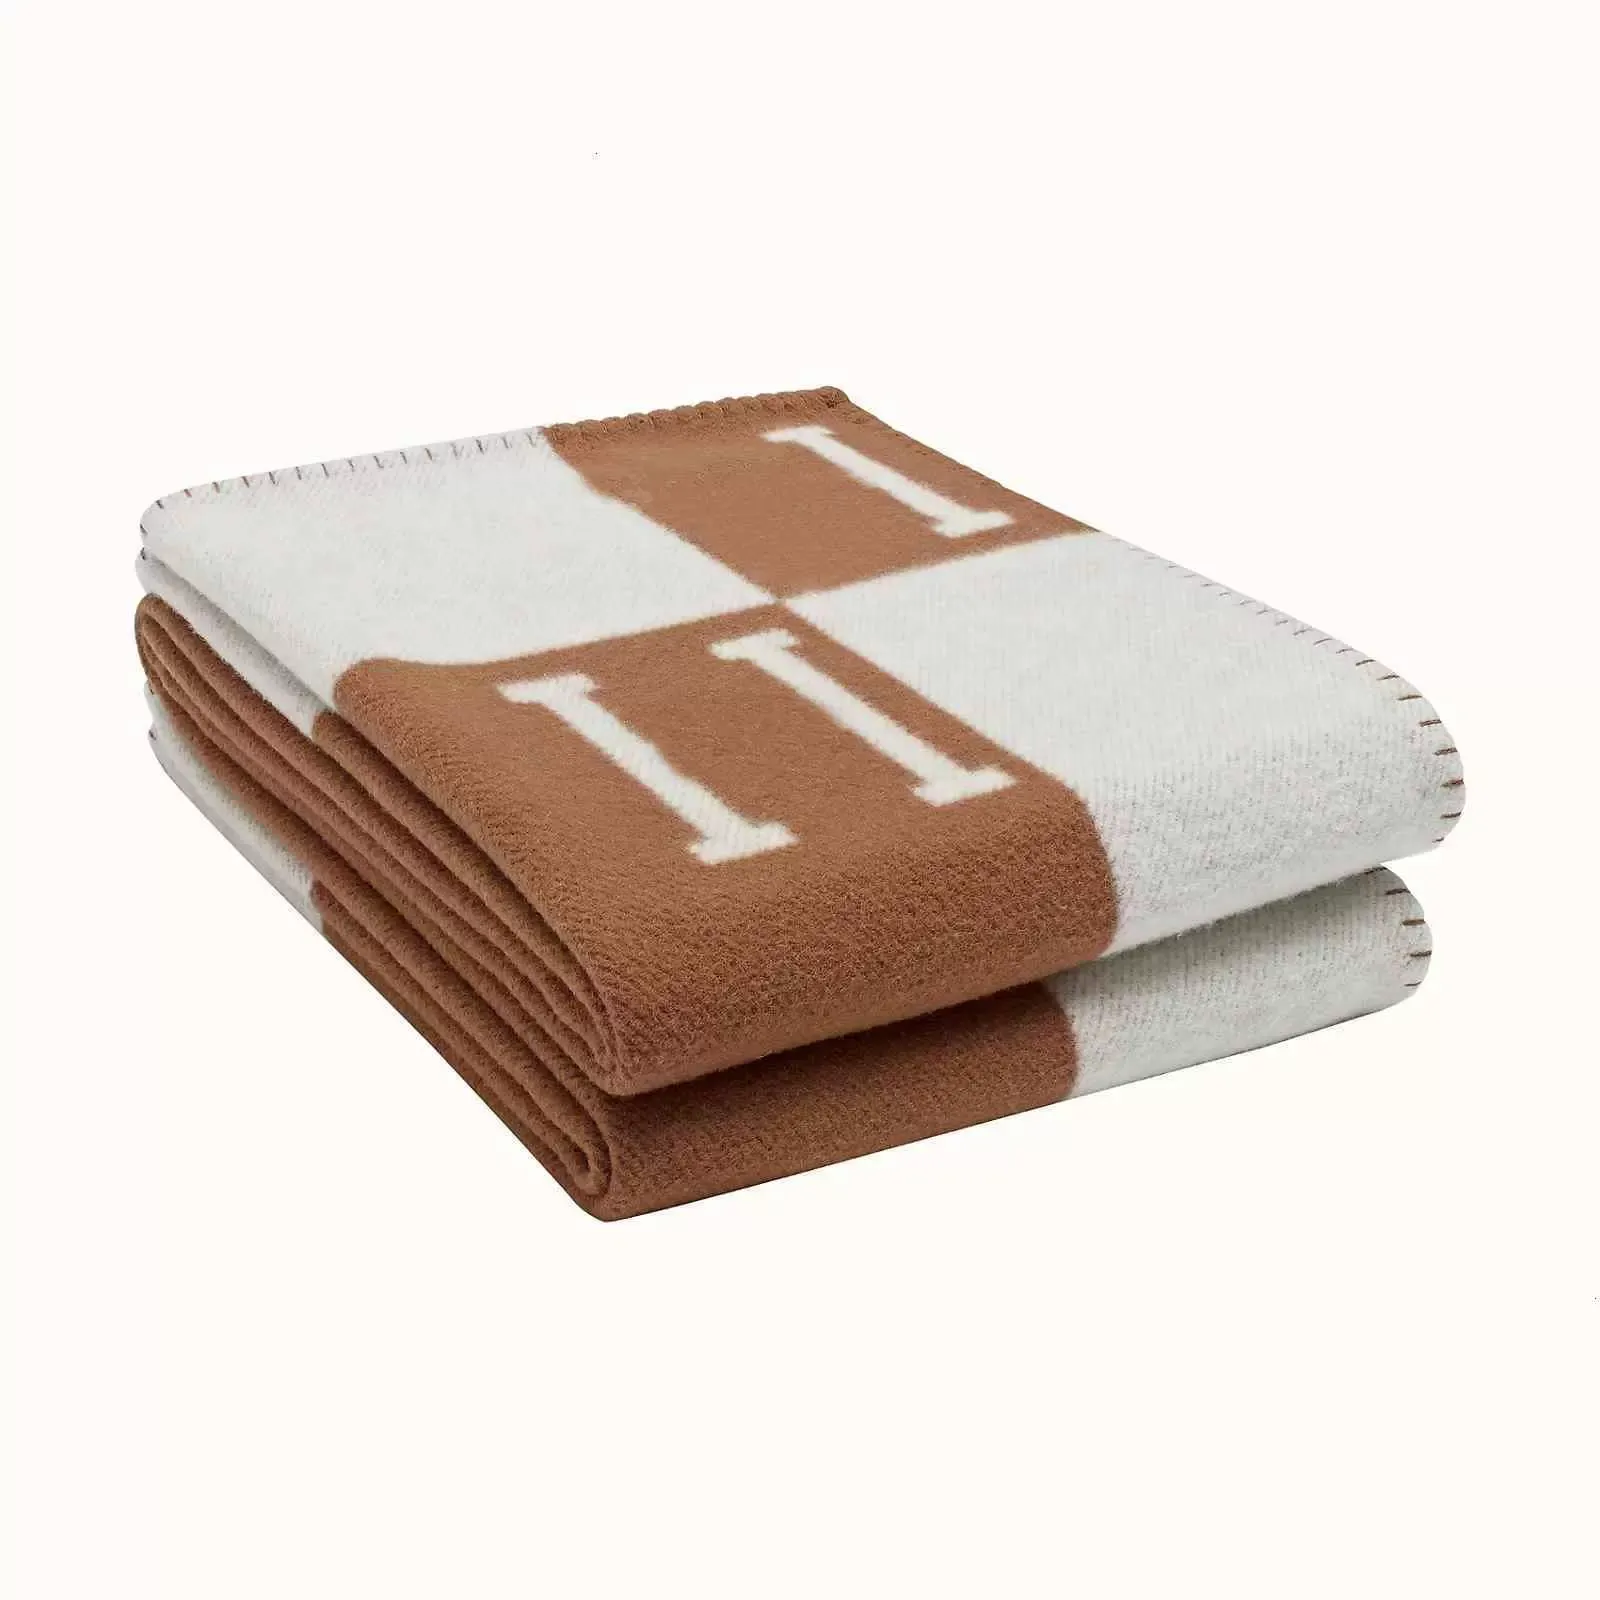 Brief Kaschmir Designer Decke Weichen Woll Schal Schal Tragbare Wärme Verdickung Plaid Sofa Bett Fleece Gestrickte Decke